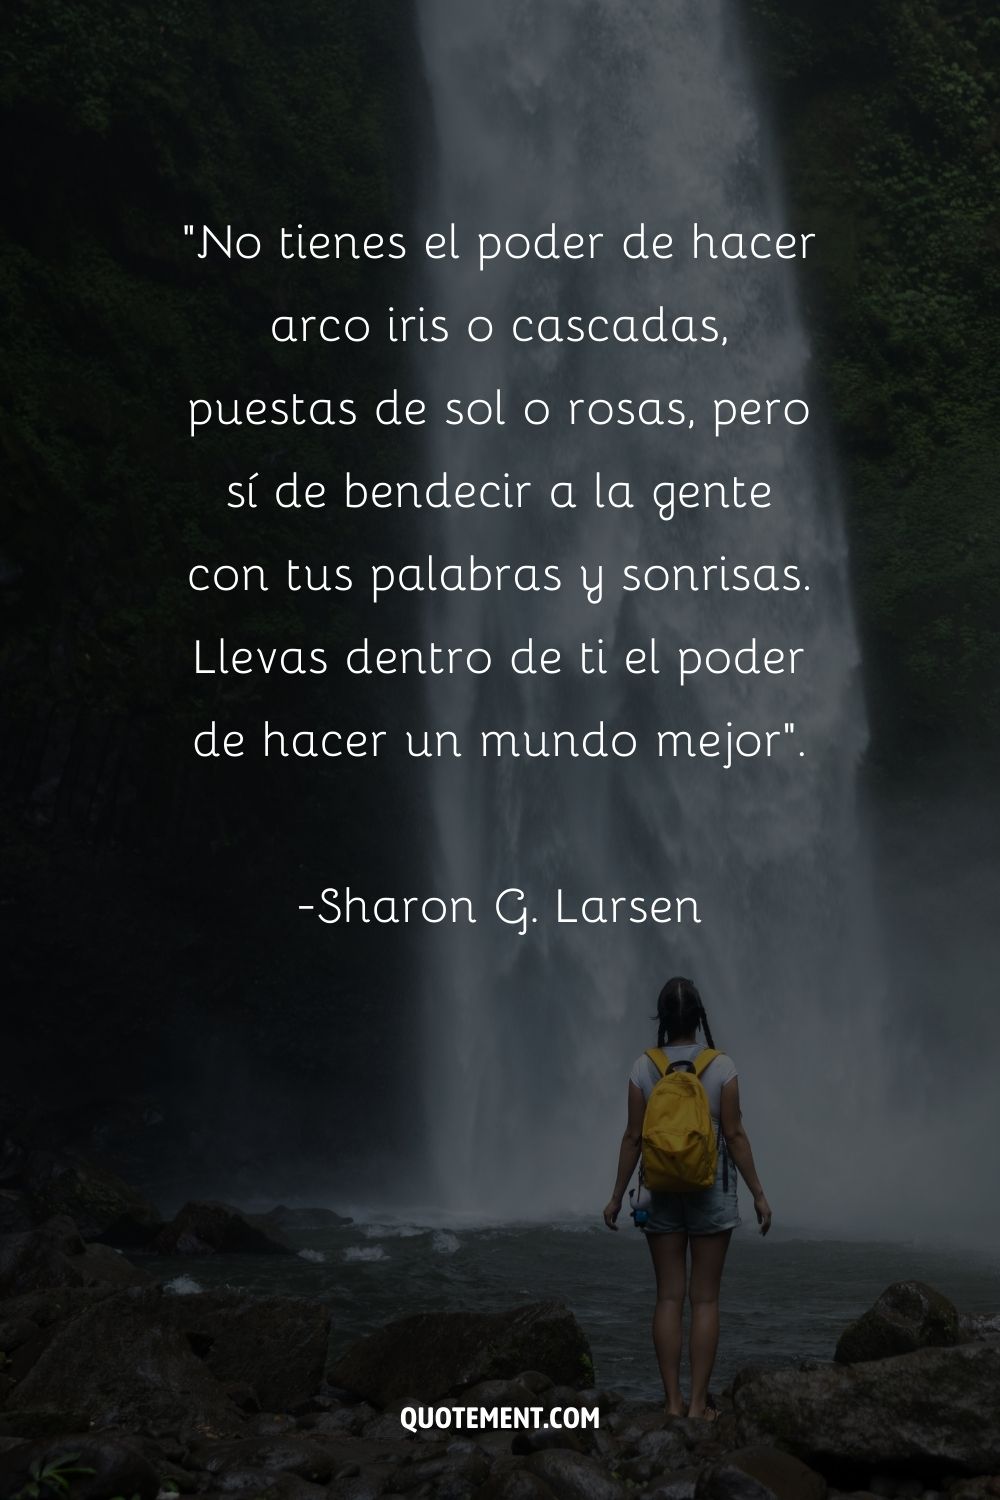 Sorprendente cita de Sharon G. Larsen y una mujer junto a la cascada en el fondo, también